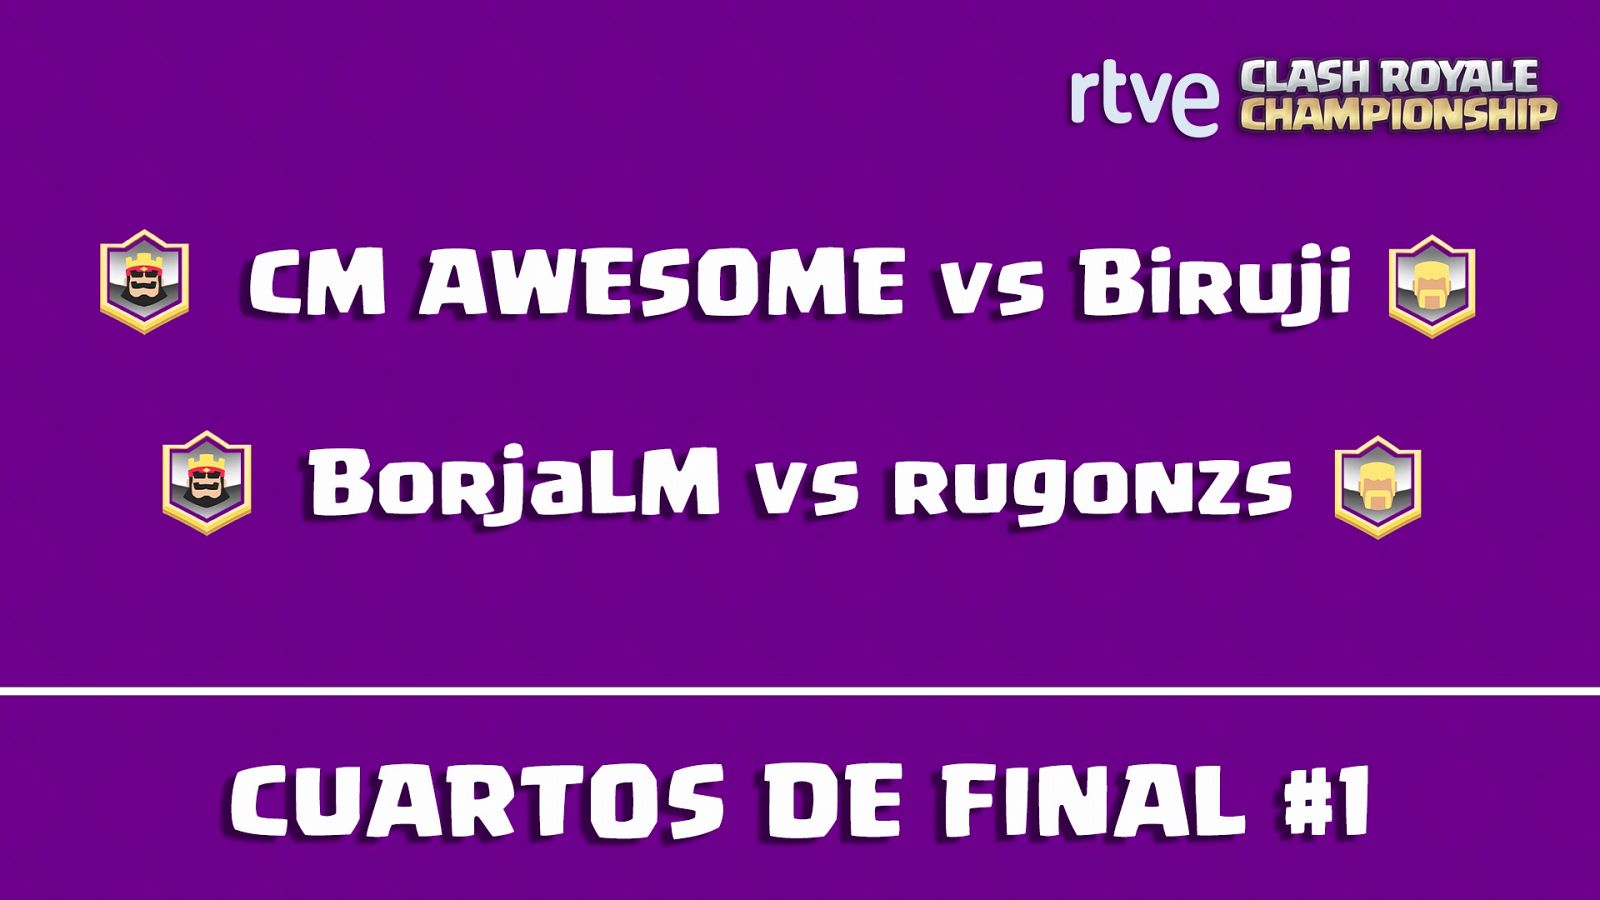 RTVE Clash Royale Championship - Cuartos de final 1 